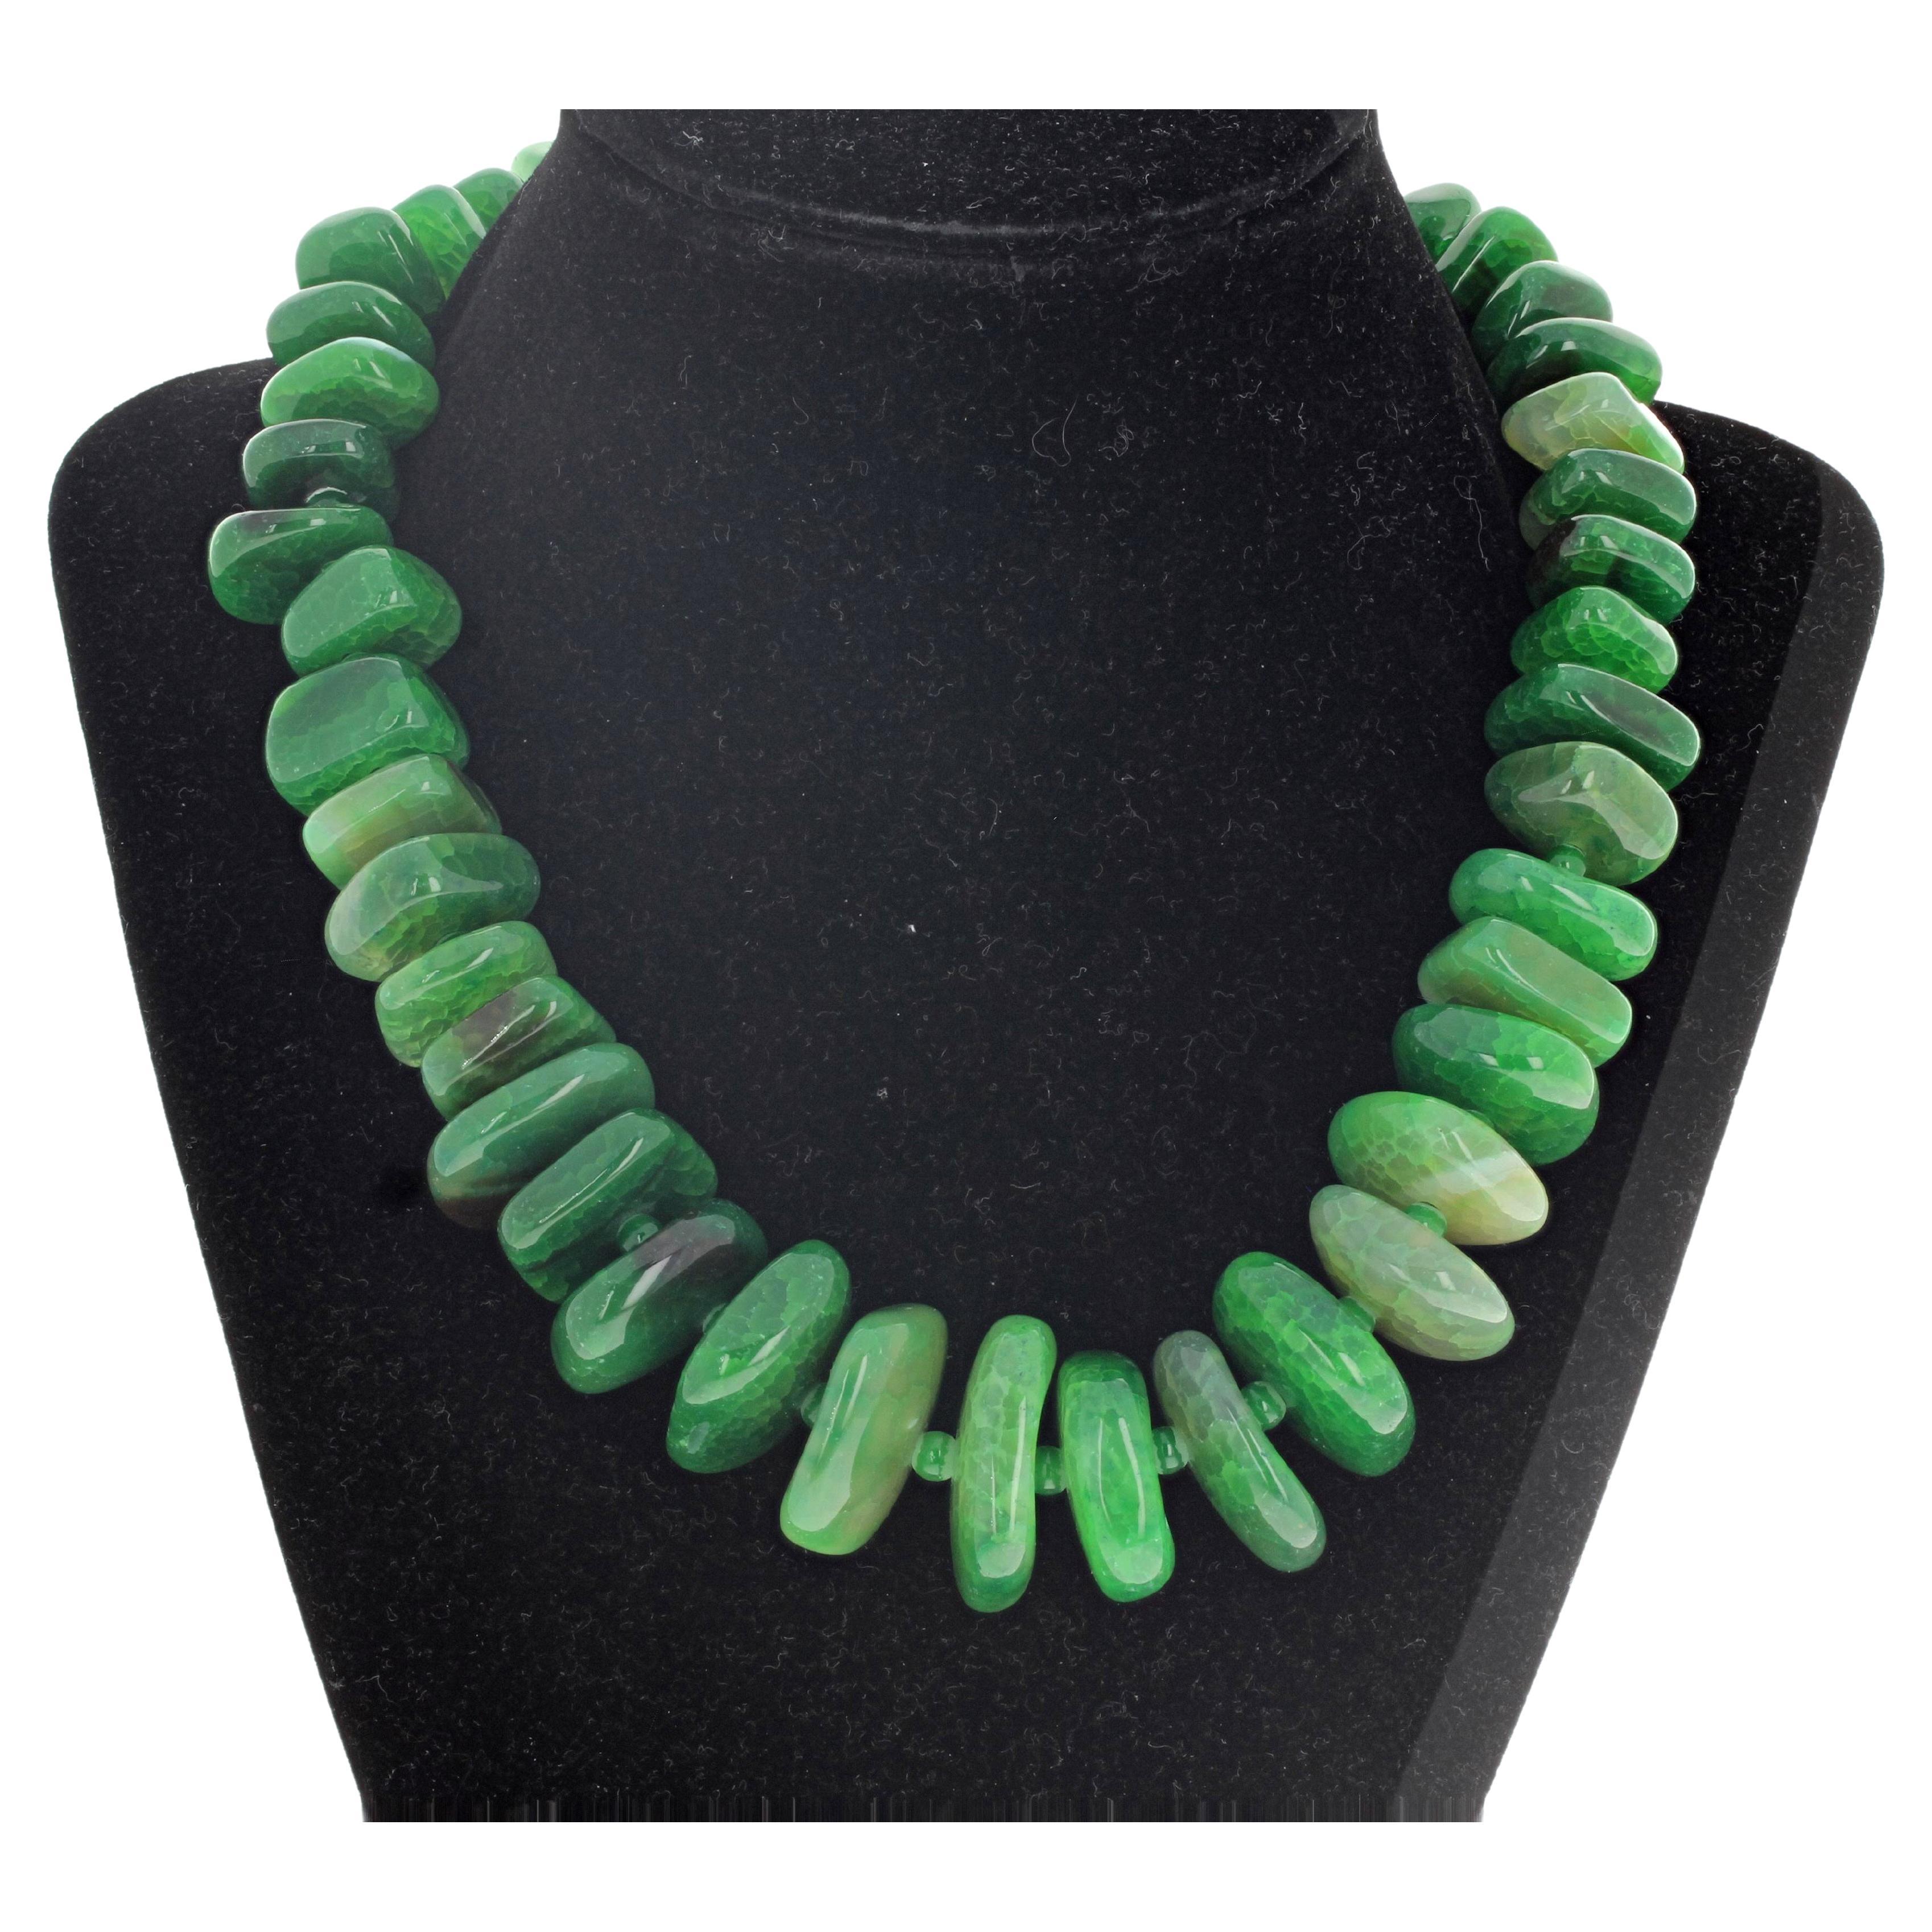 AJD Absolut schöne grüne abgestufte natürliche unregelmäßige Achat Rondel-Halskette